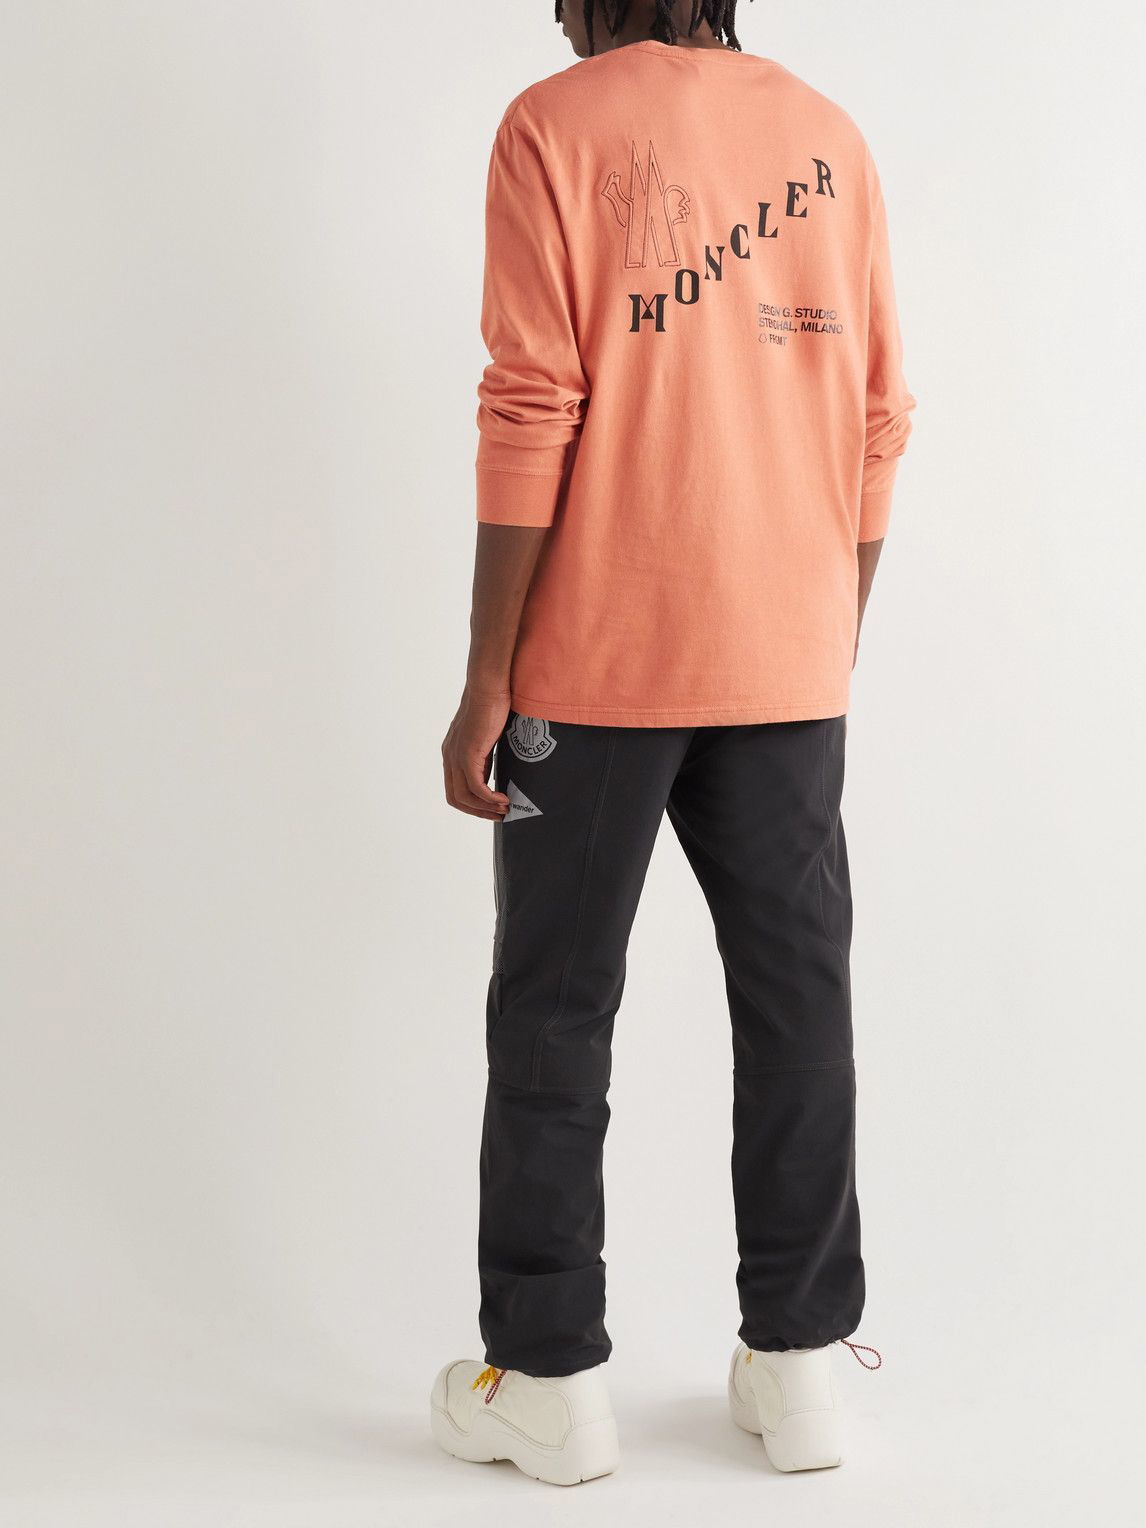 Moncler Genius Printed Cotton Jersey T-shirt in Orange for Men